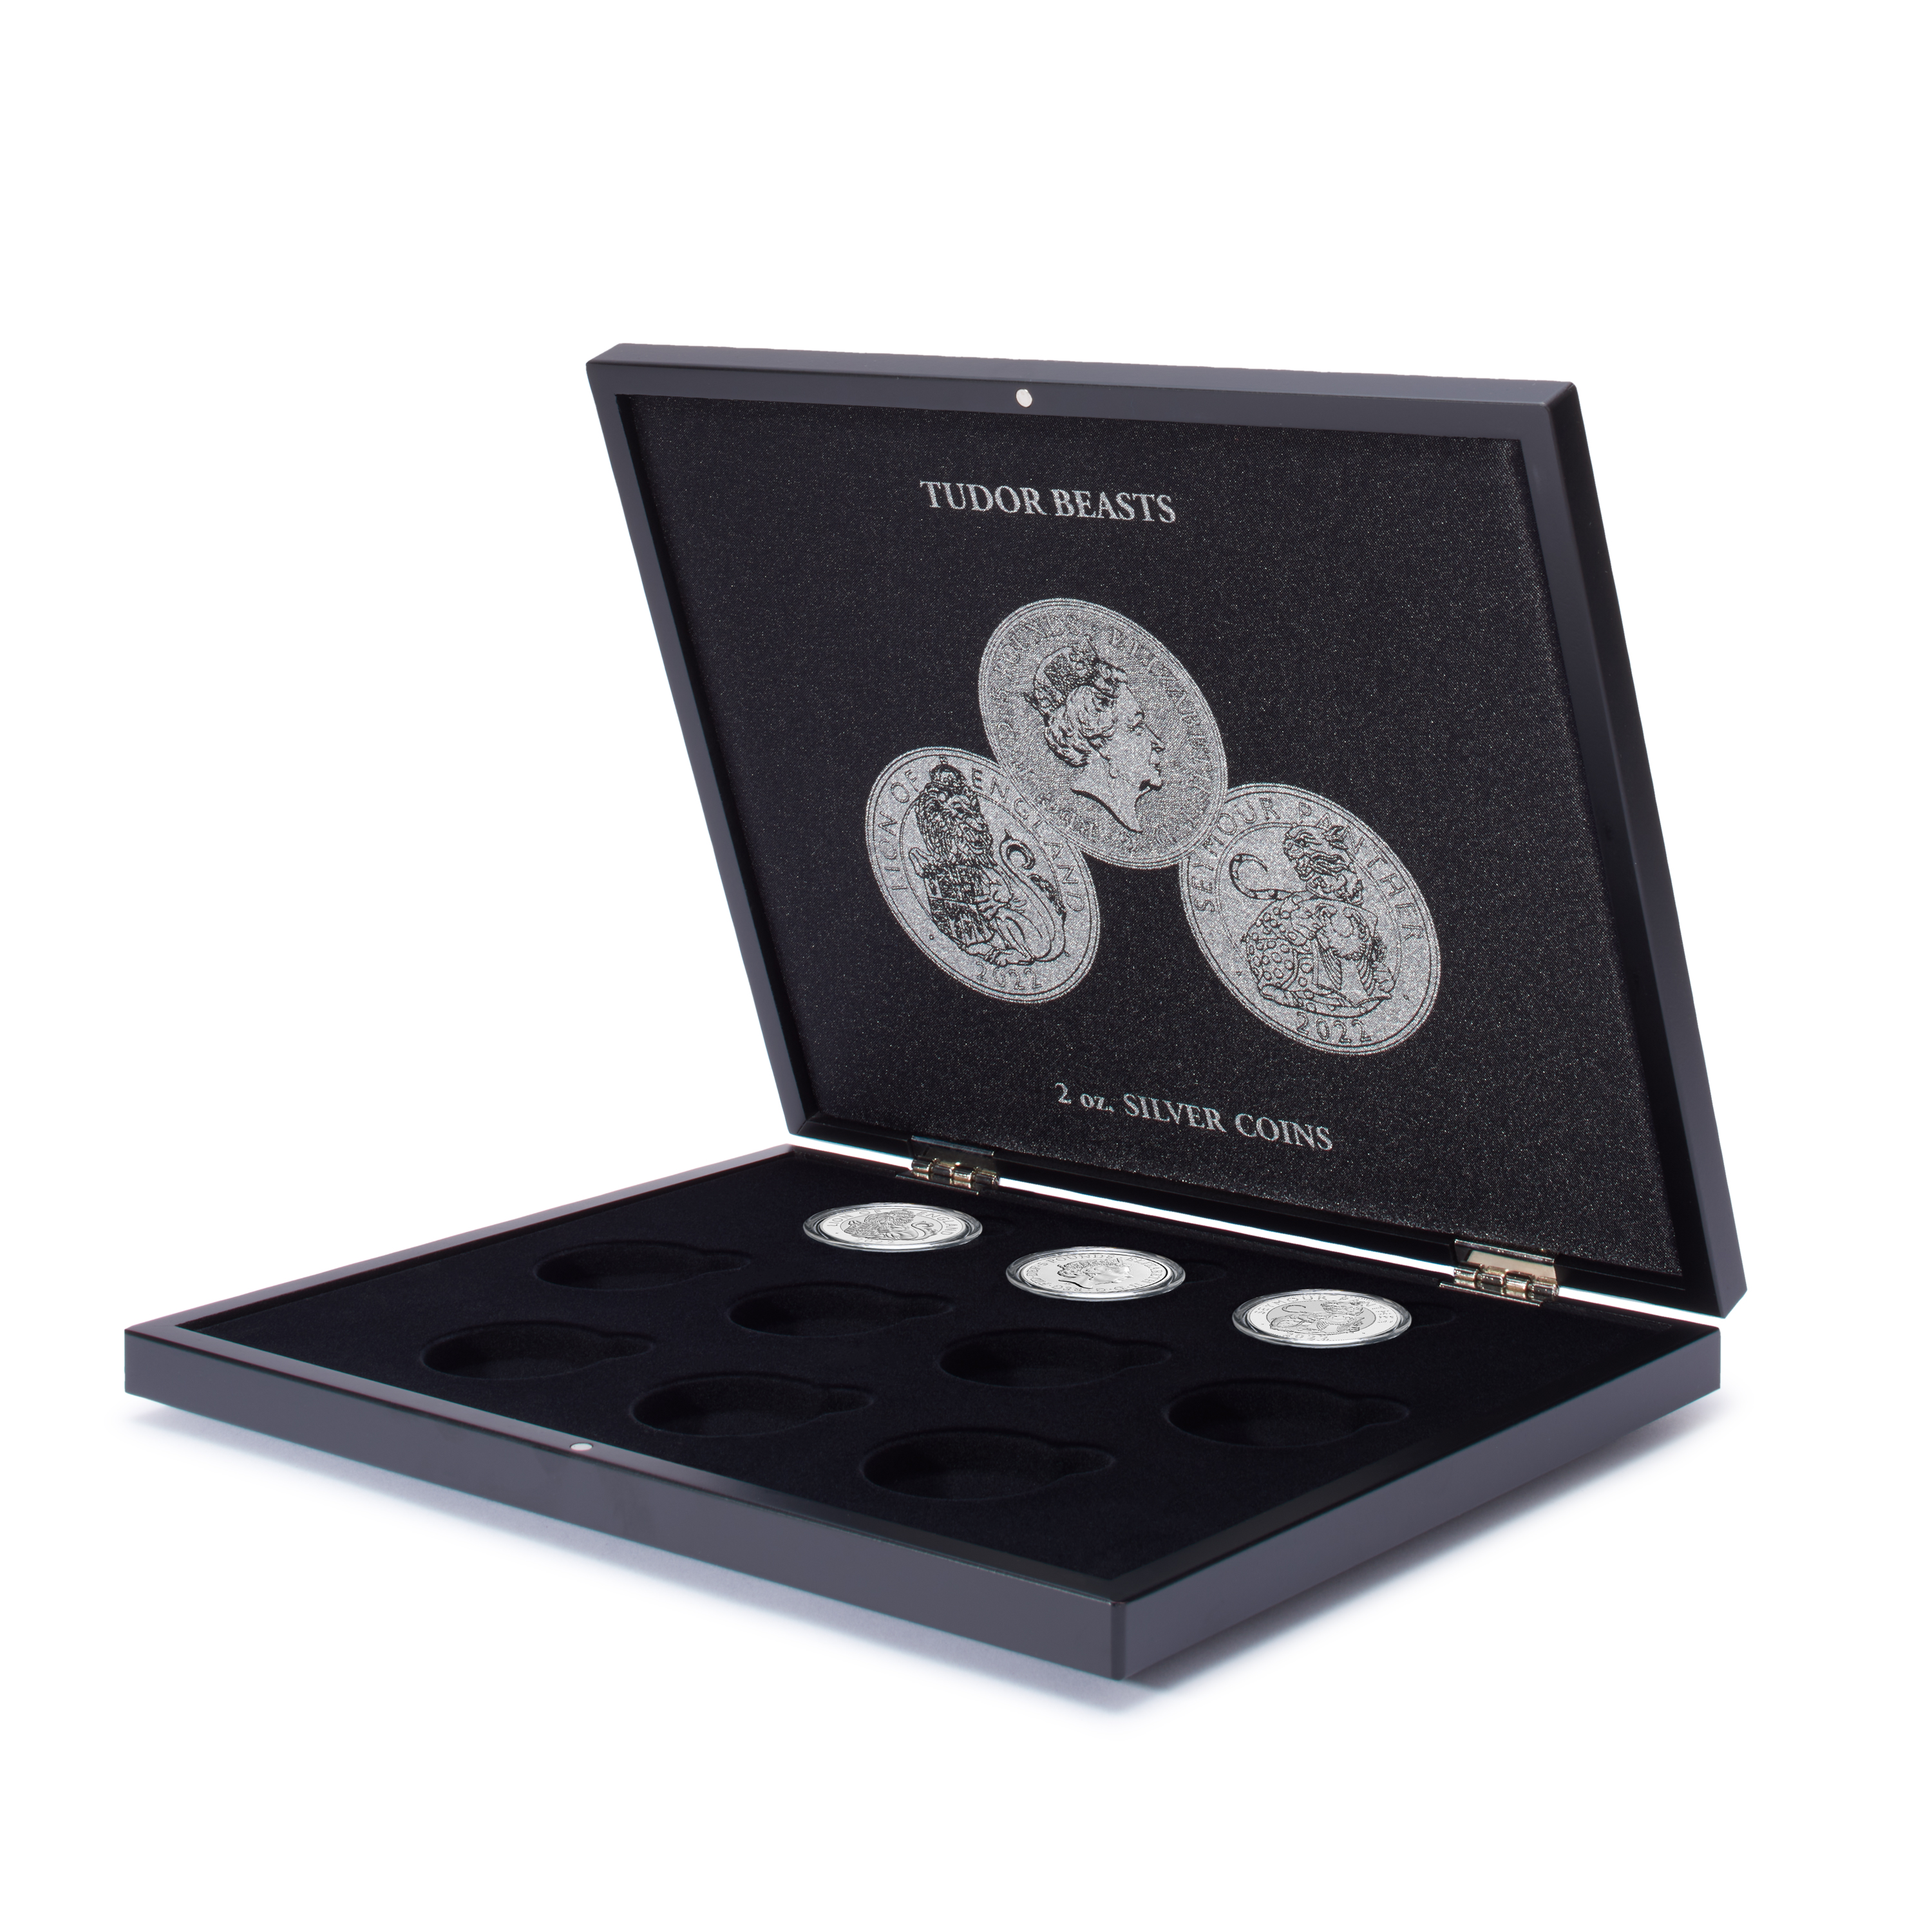 VOLTERRA “Tudor Beasts” 2 oz silver coins